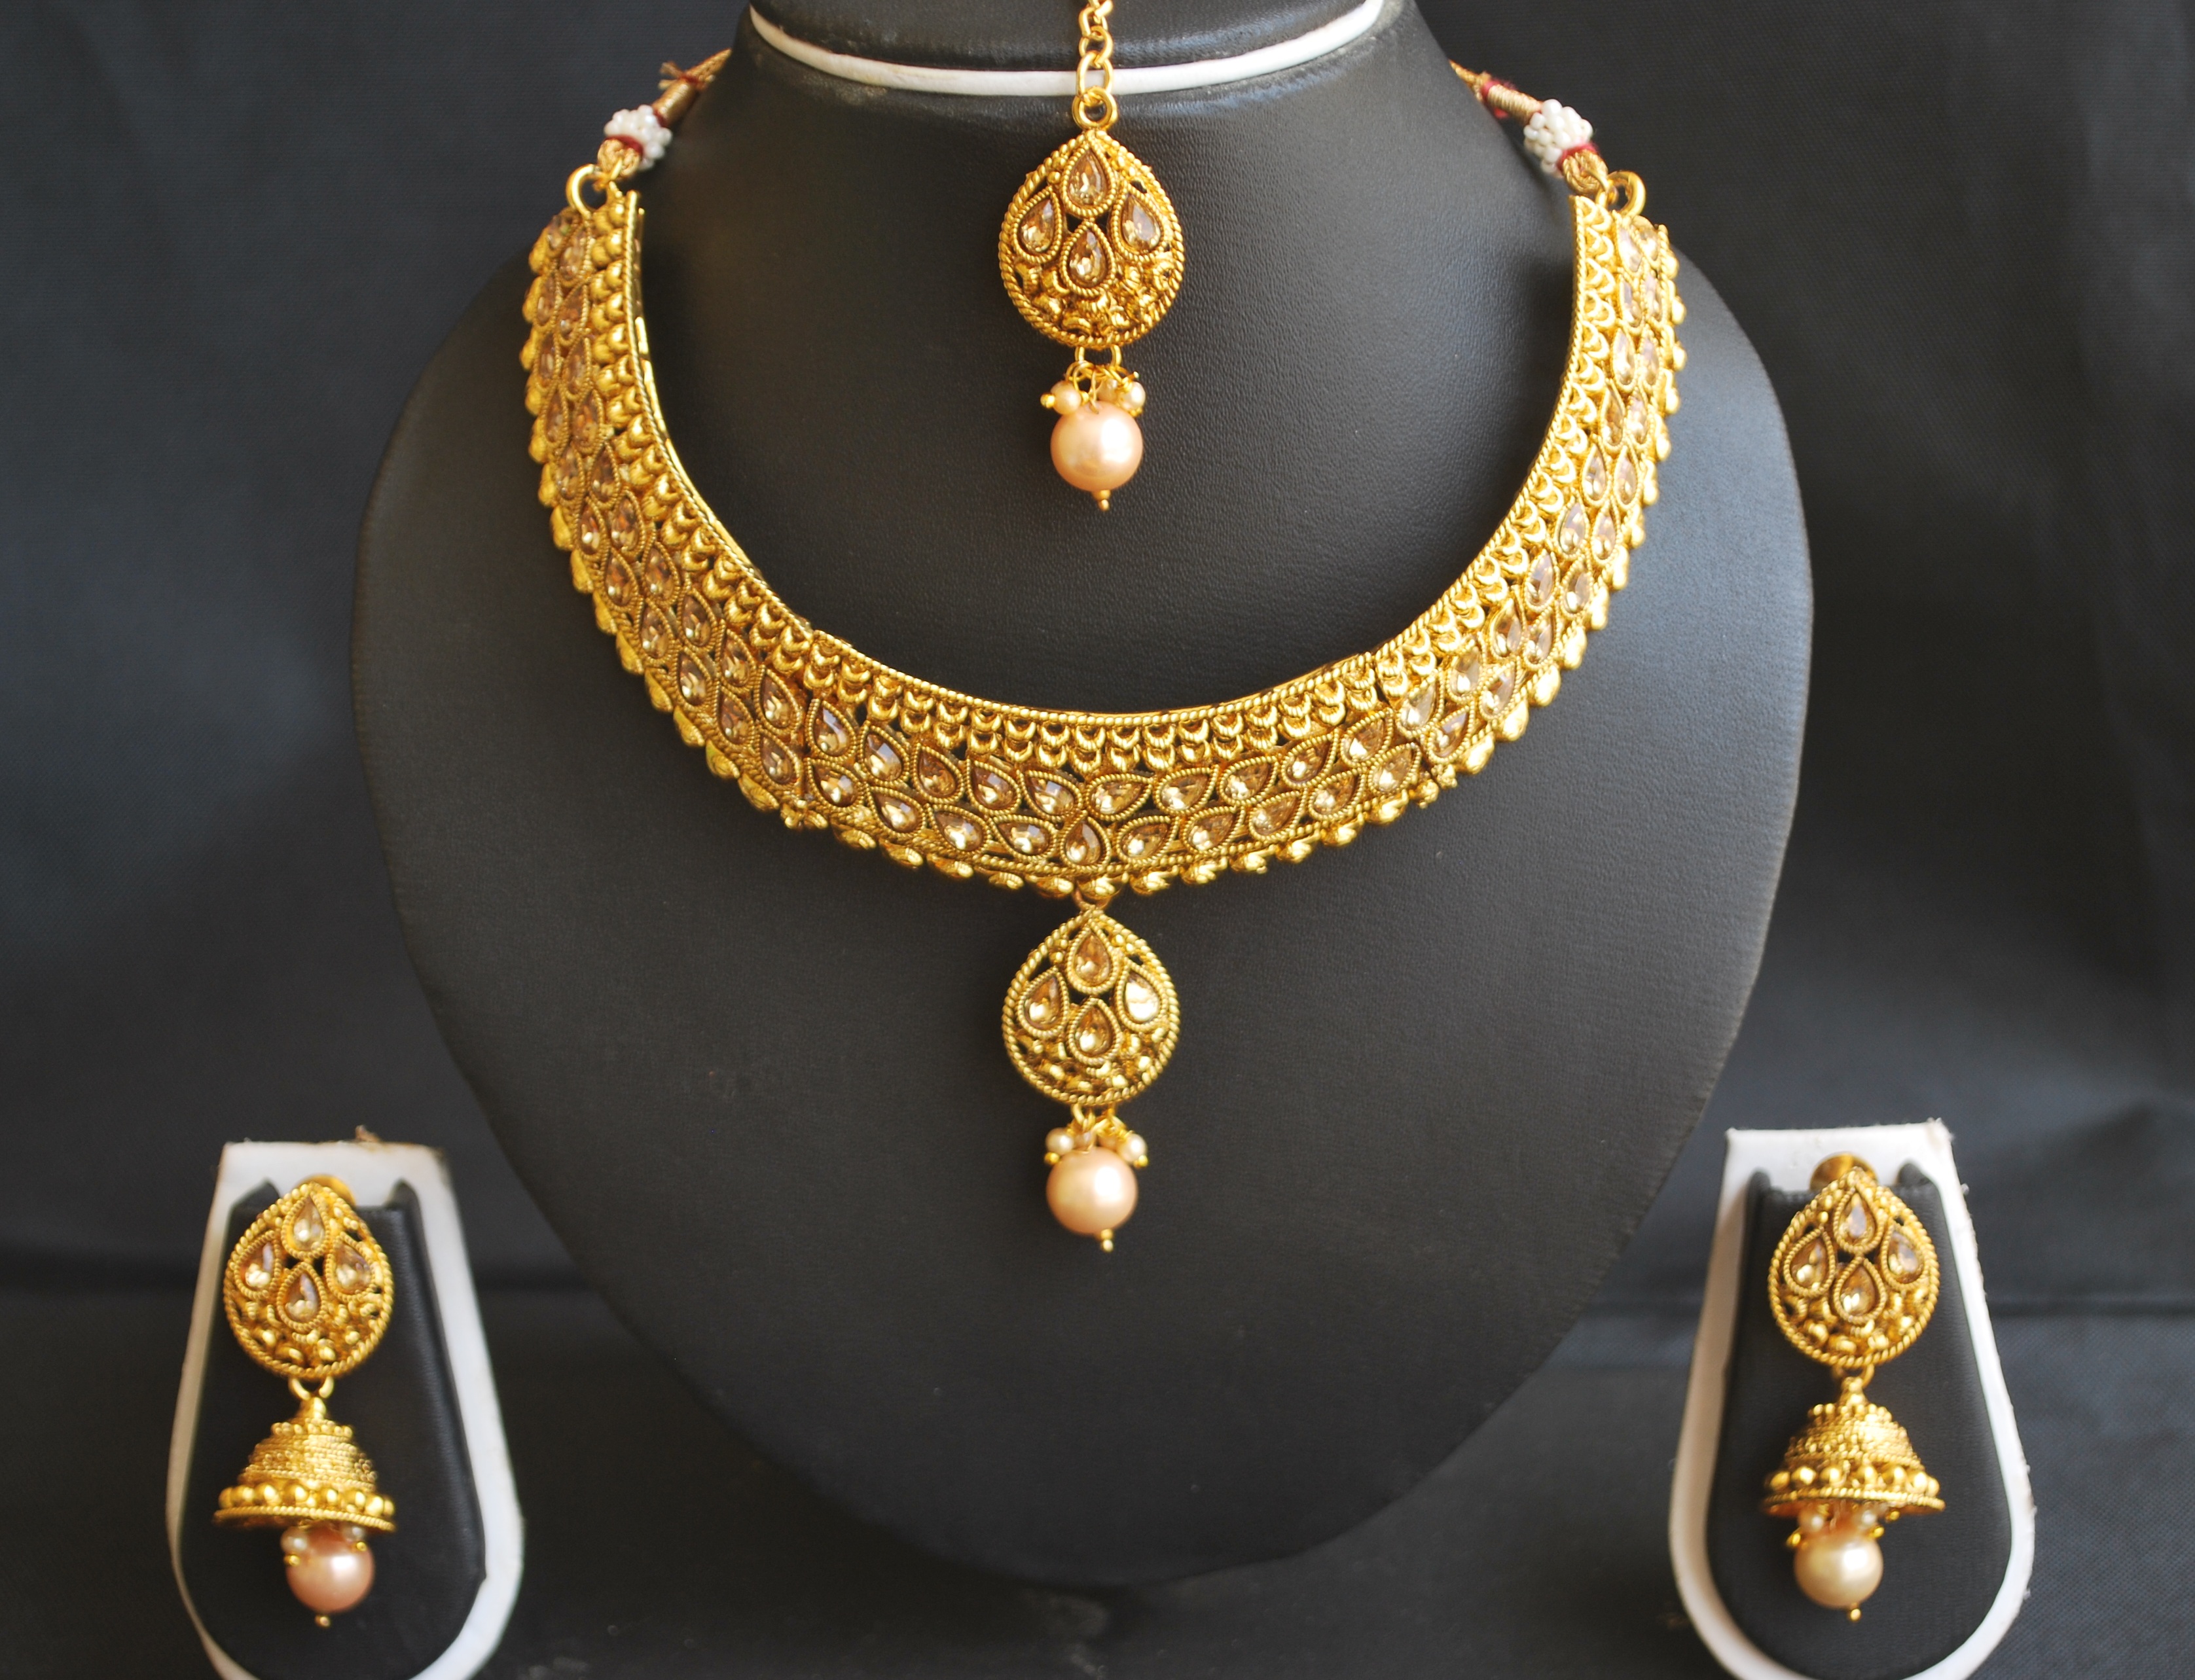 Imitation artificial golden kundan choker necklace set with maang tikka